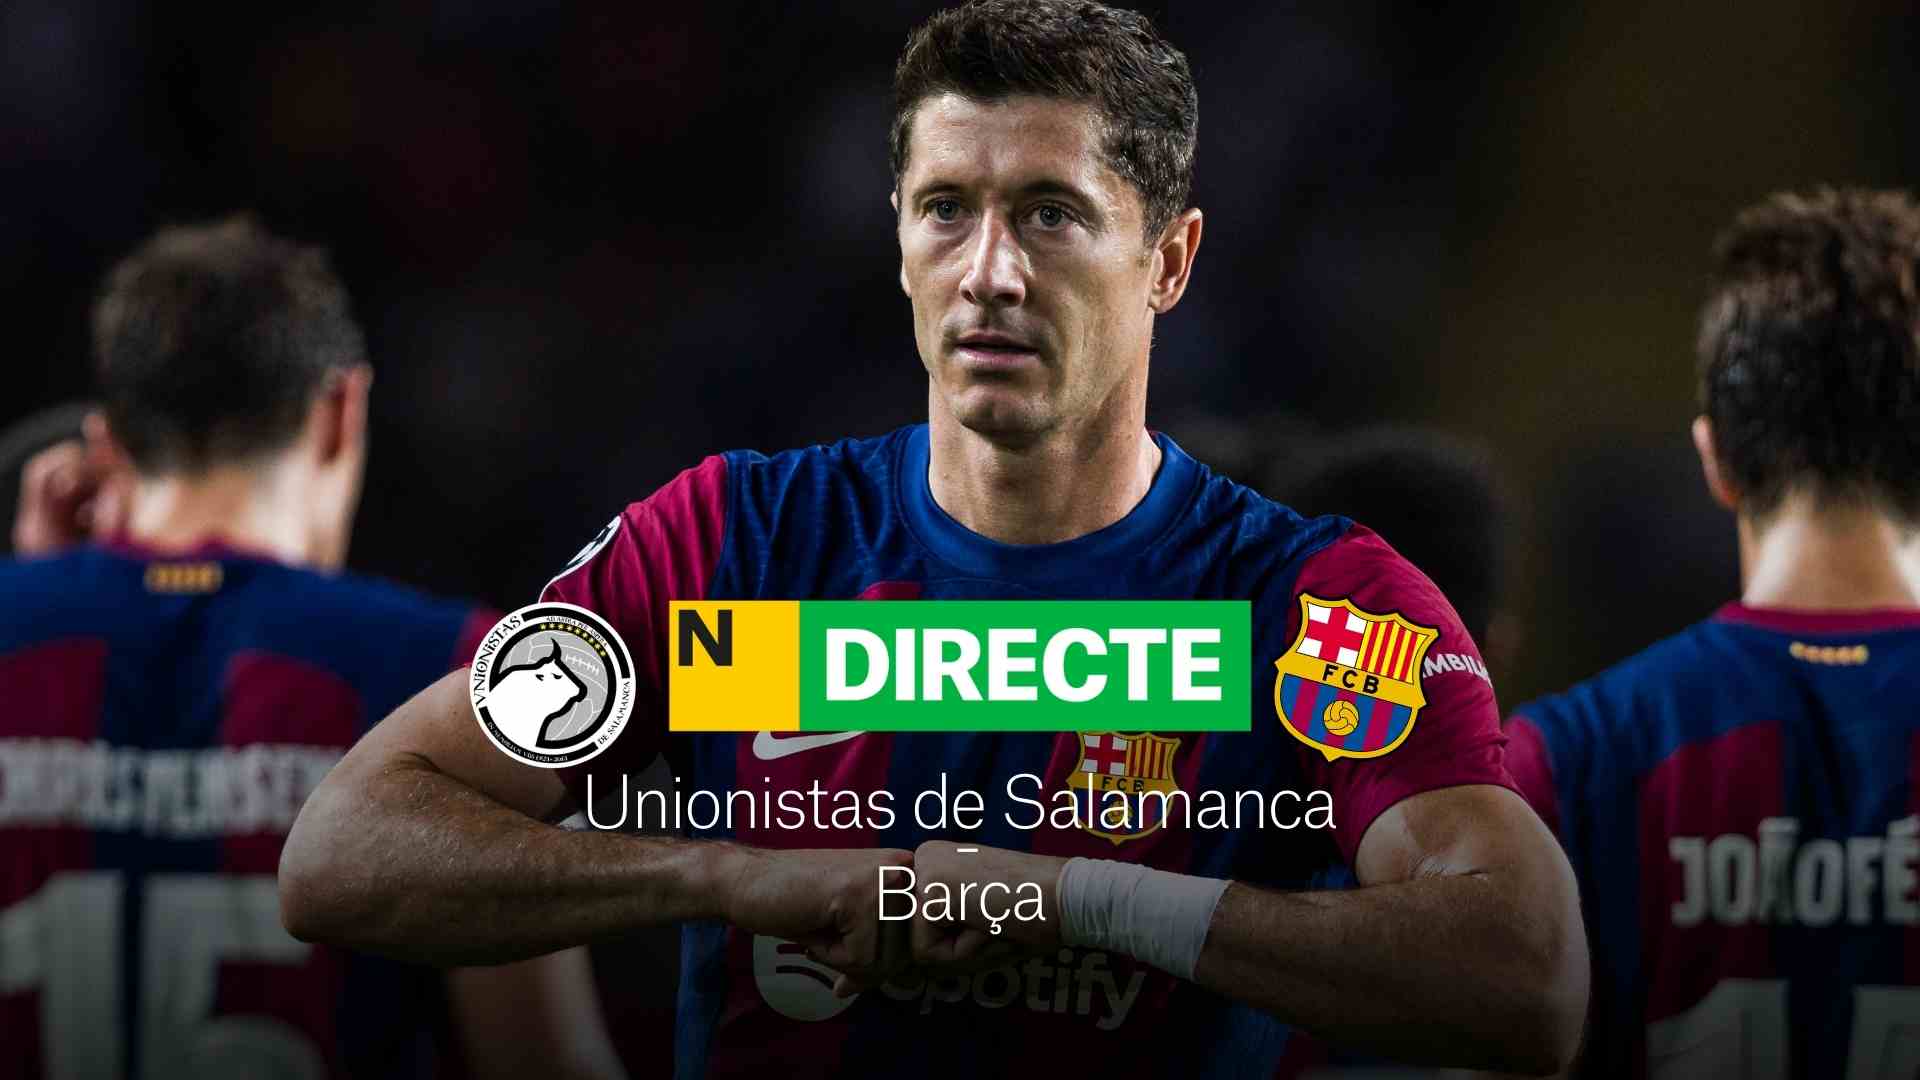 Unionistas de Salamanca - Barça de la Copa del Rei, DIRECTE | Resultat, resum i gols